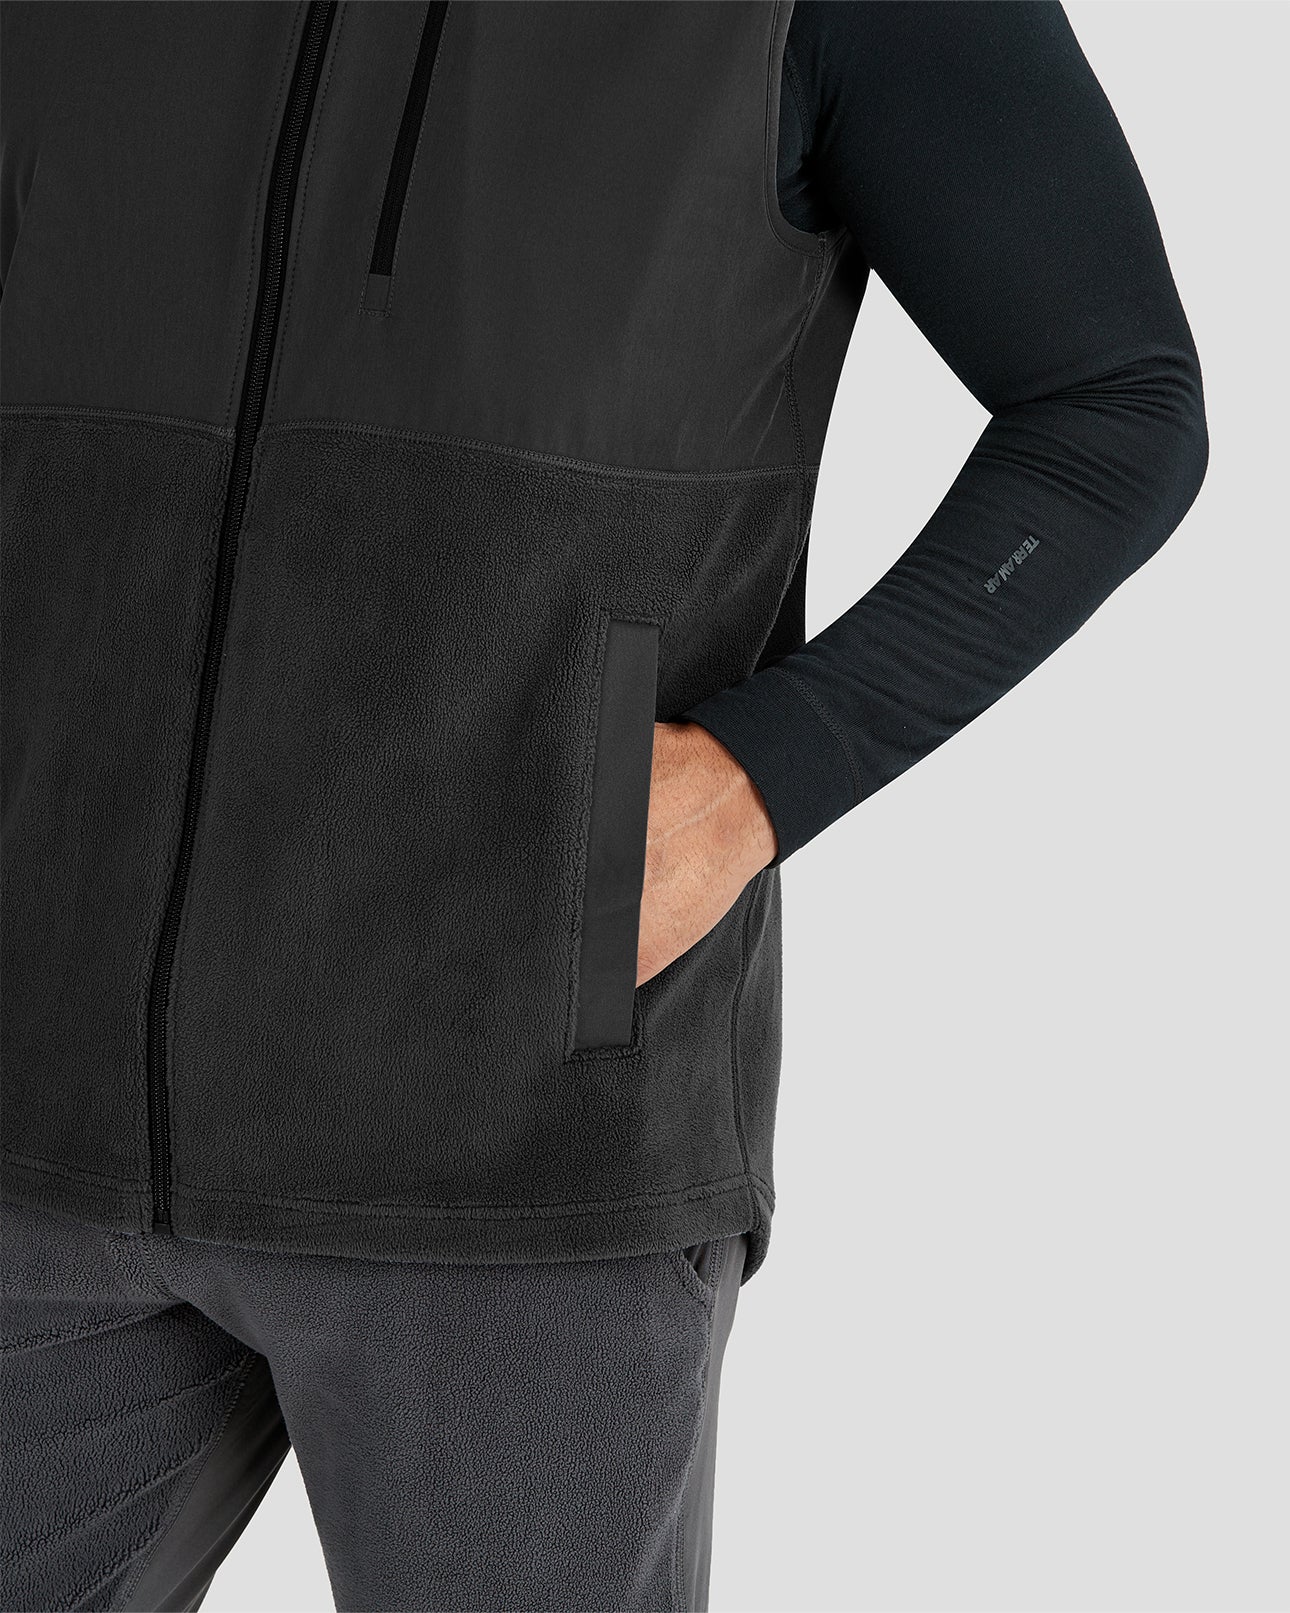 Men’s C-Suite Mammoth Sherpa Fleece Full-Zip Vest